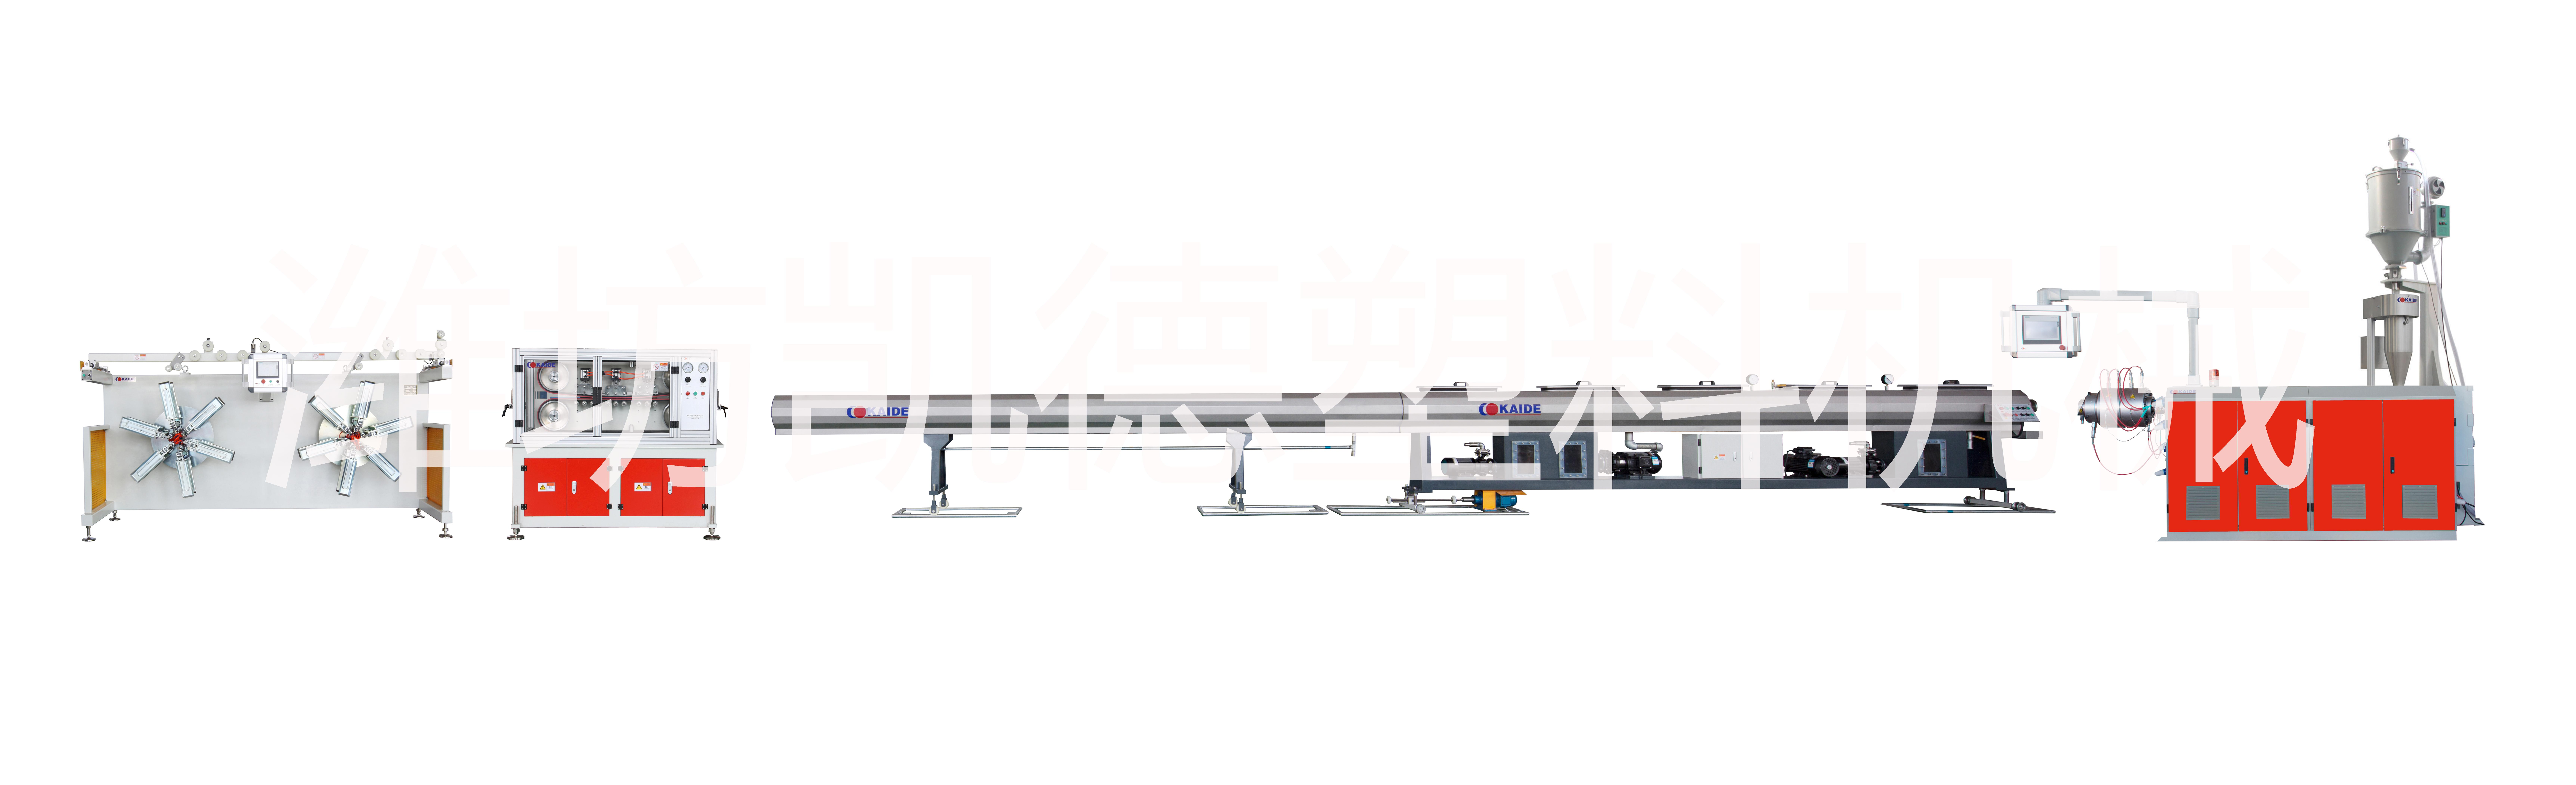 高速PE-Xb管材机组/高速PE-Xb管材设备/高速PE-Xb管材生产线/高速PE-Xb管材生产设备